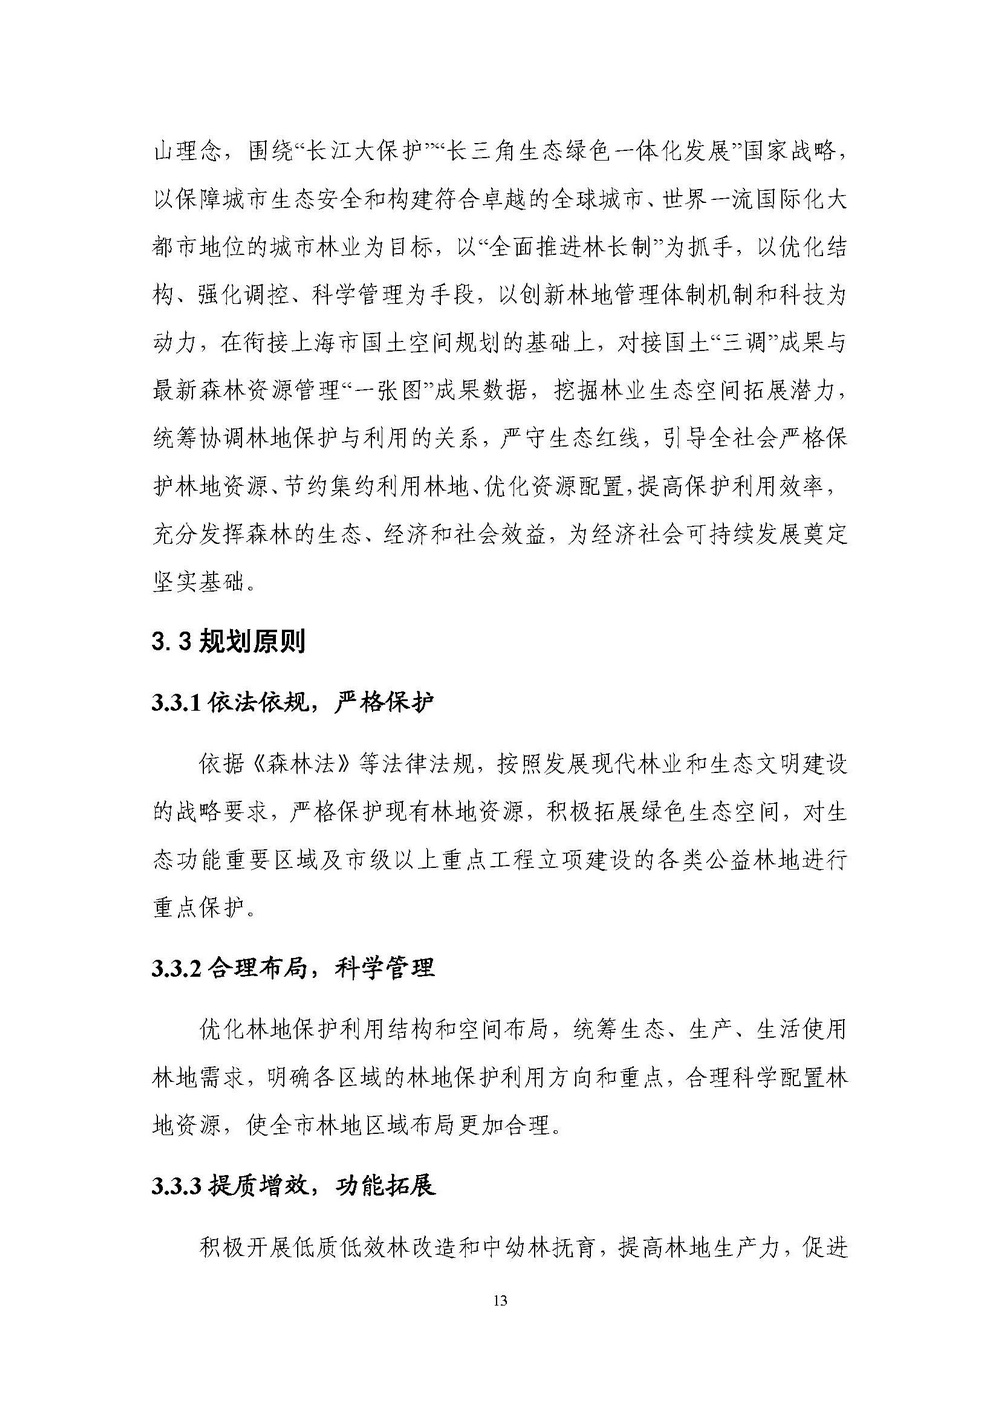 上海市森林和林地保护利用规划文本 公开稿 附图_页面_16.jpg